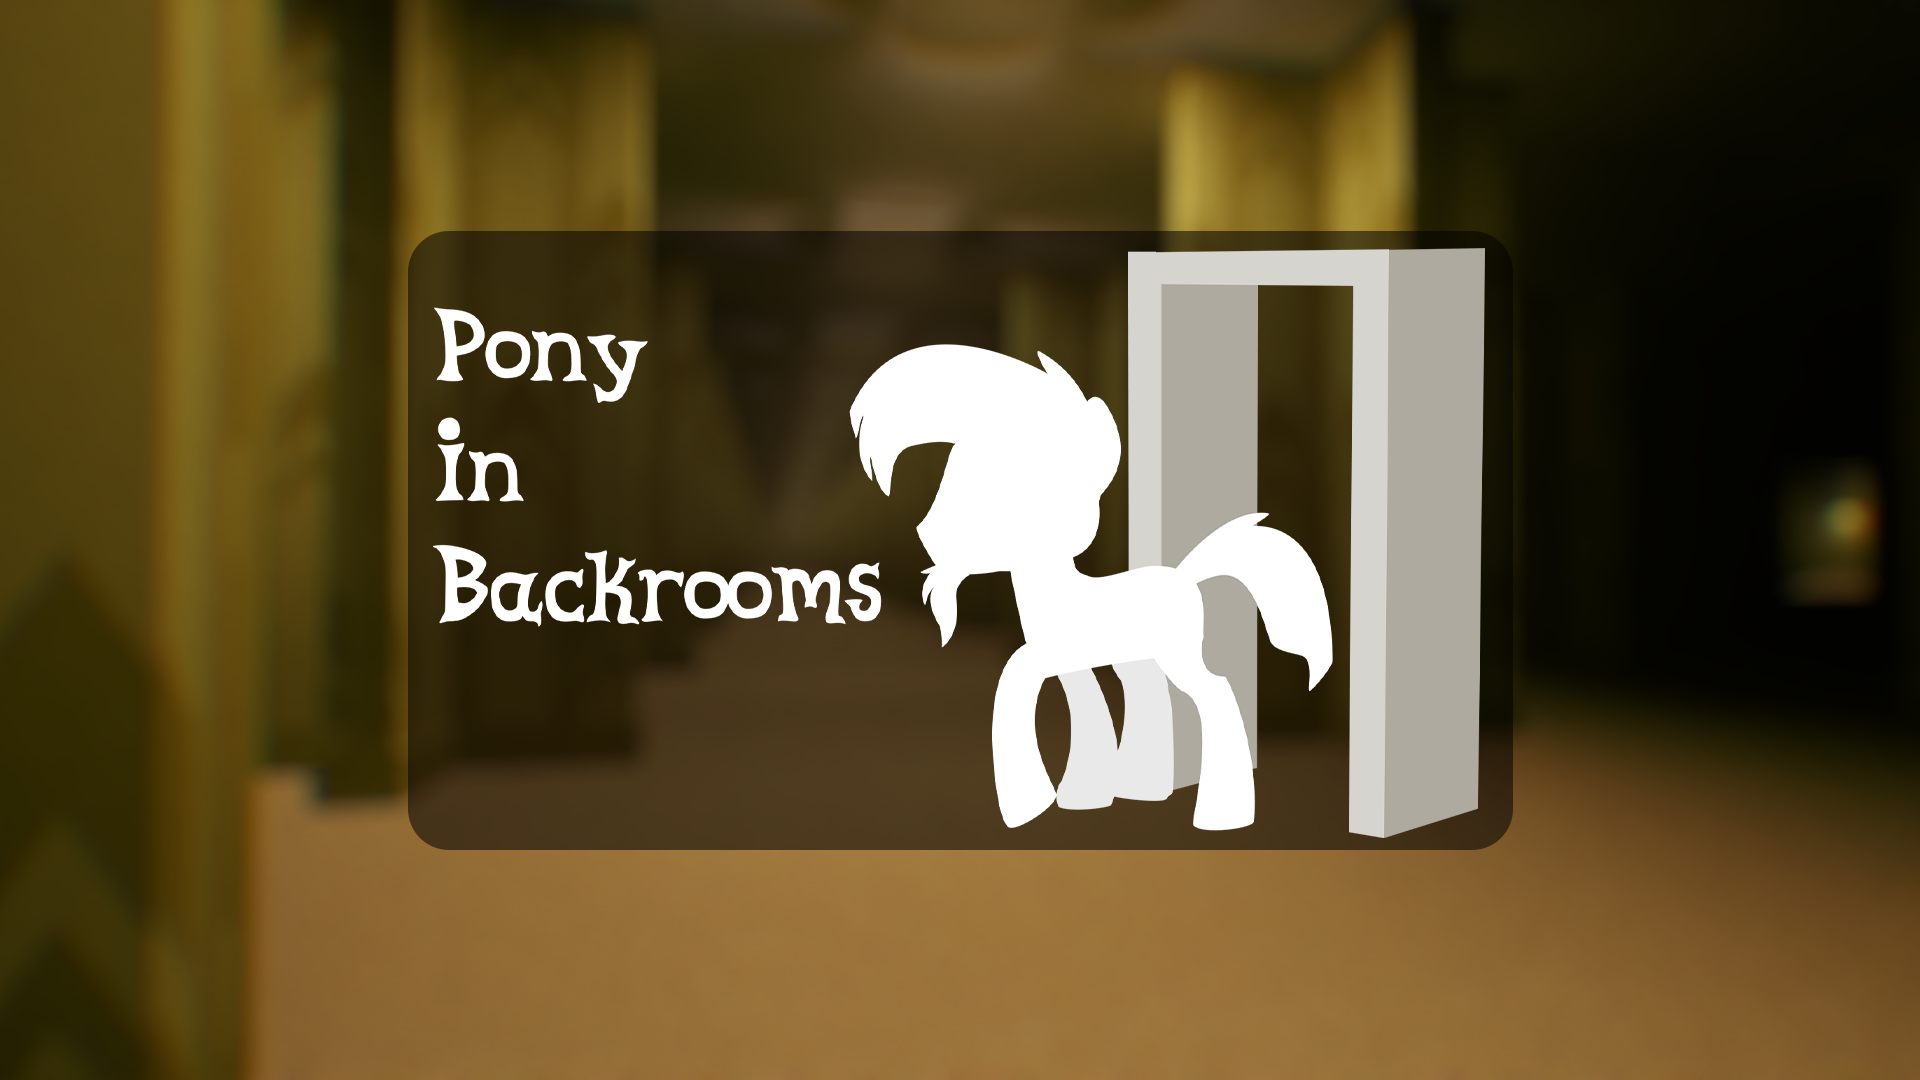 Pony in backrooms